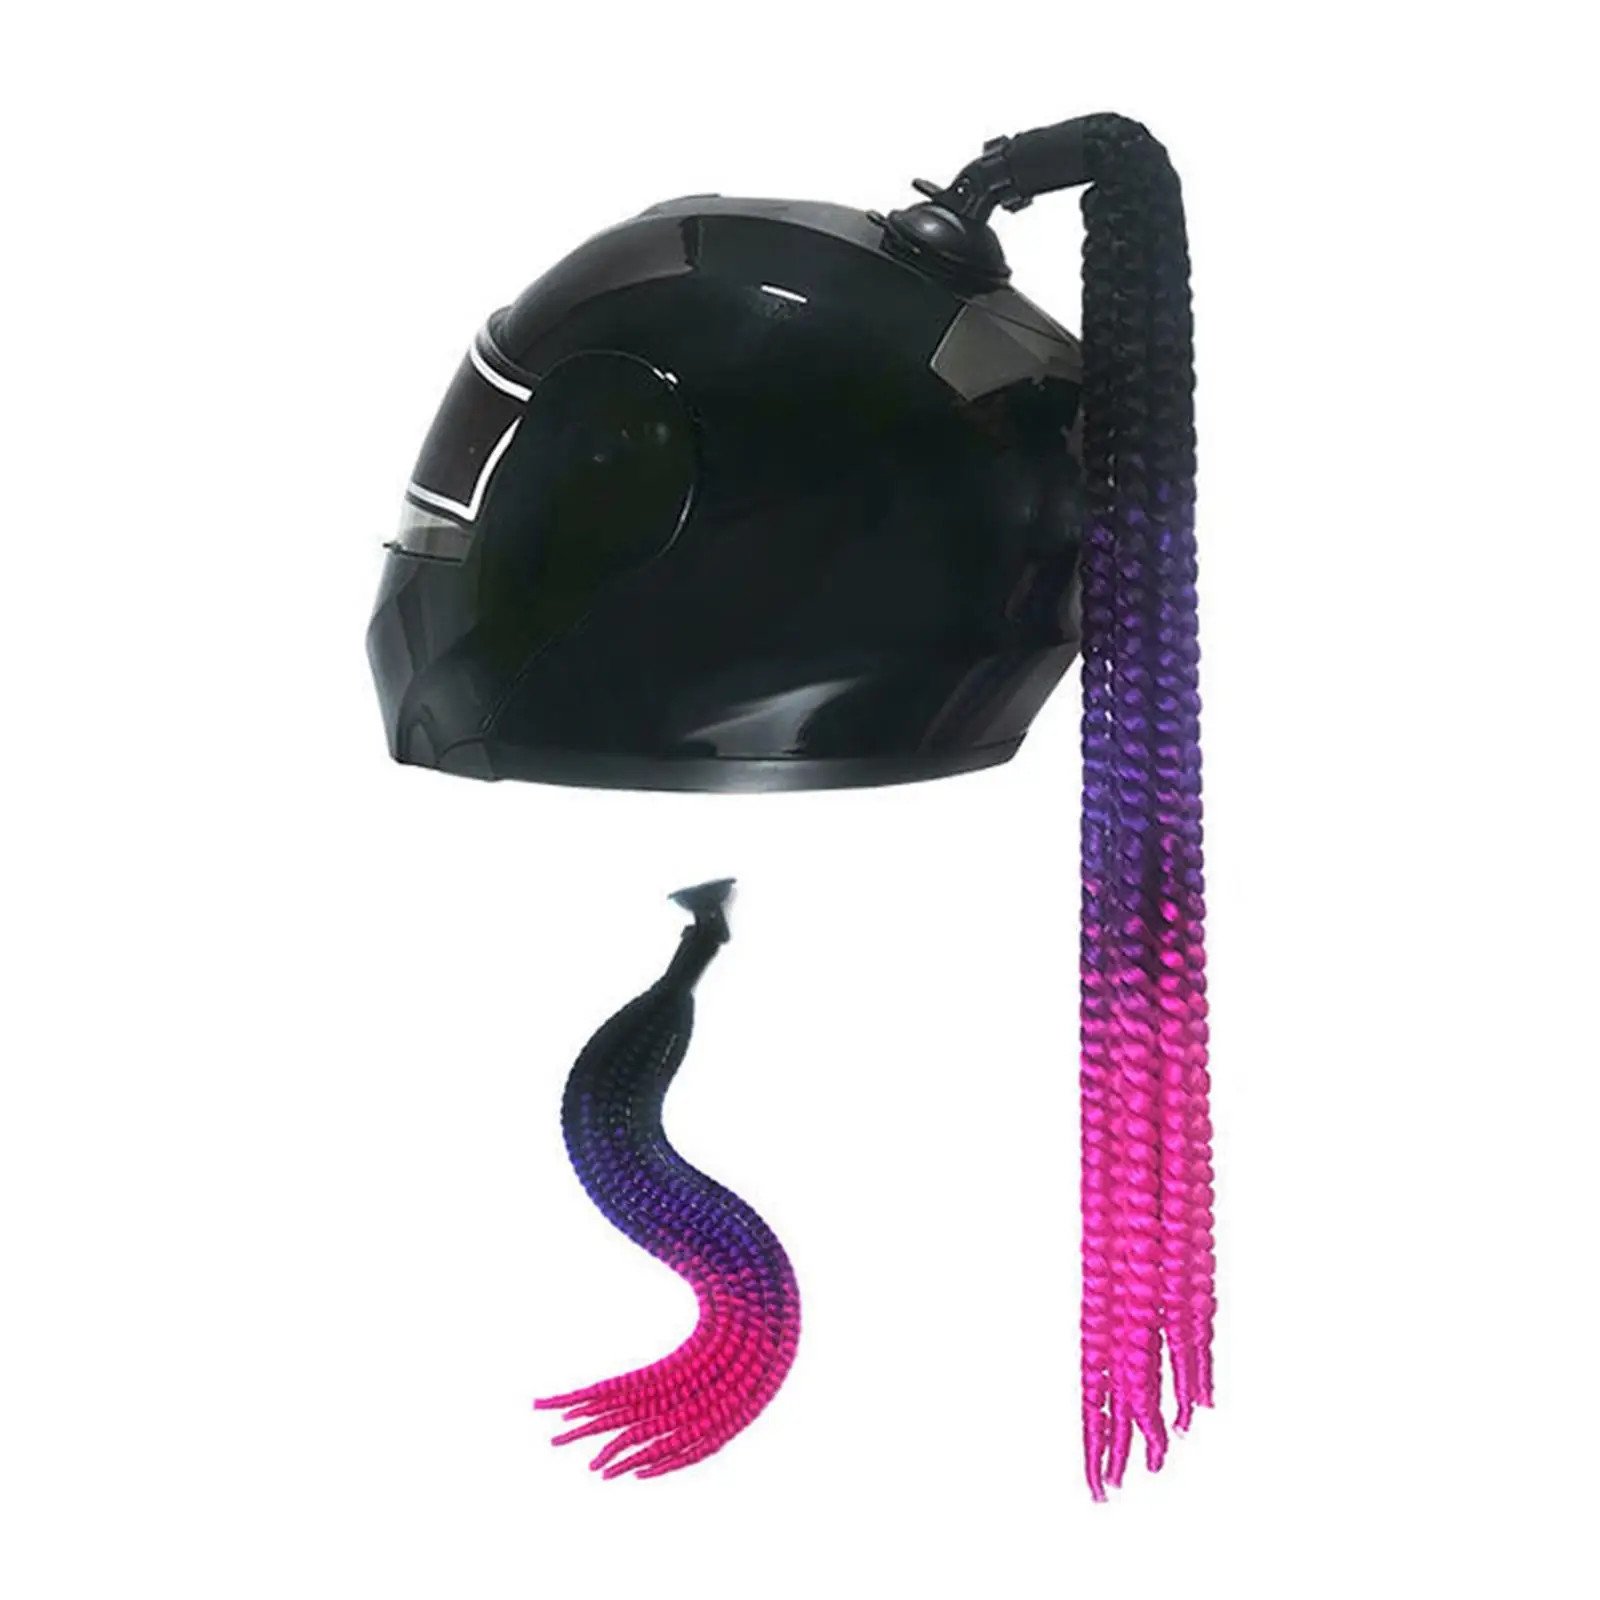 Helmet Pigtails 22inch (Helmet Not Included) Helmet Hair for Motorcycle